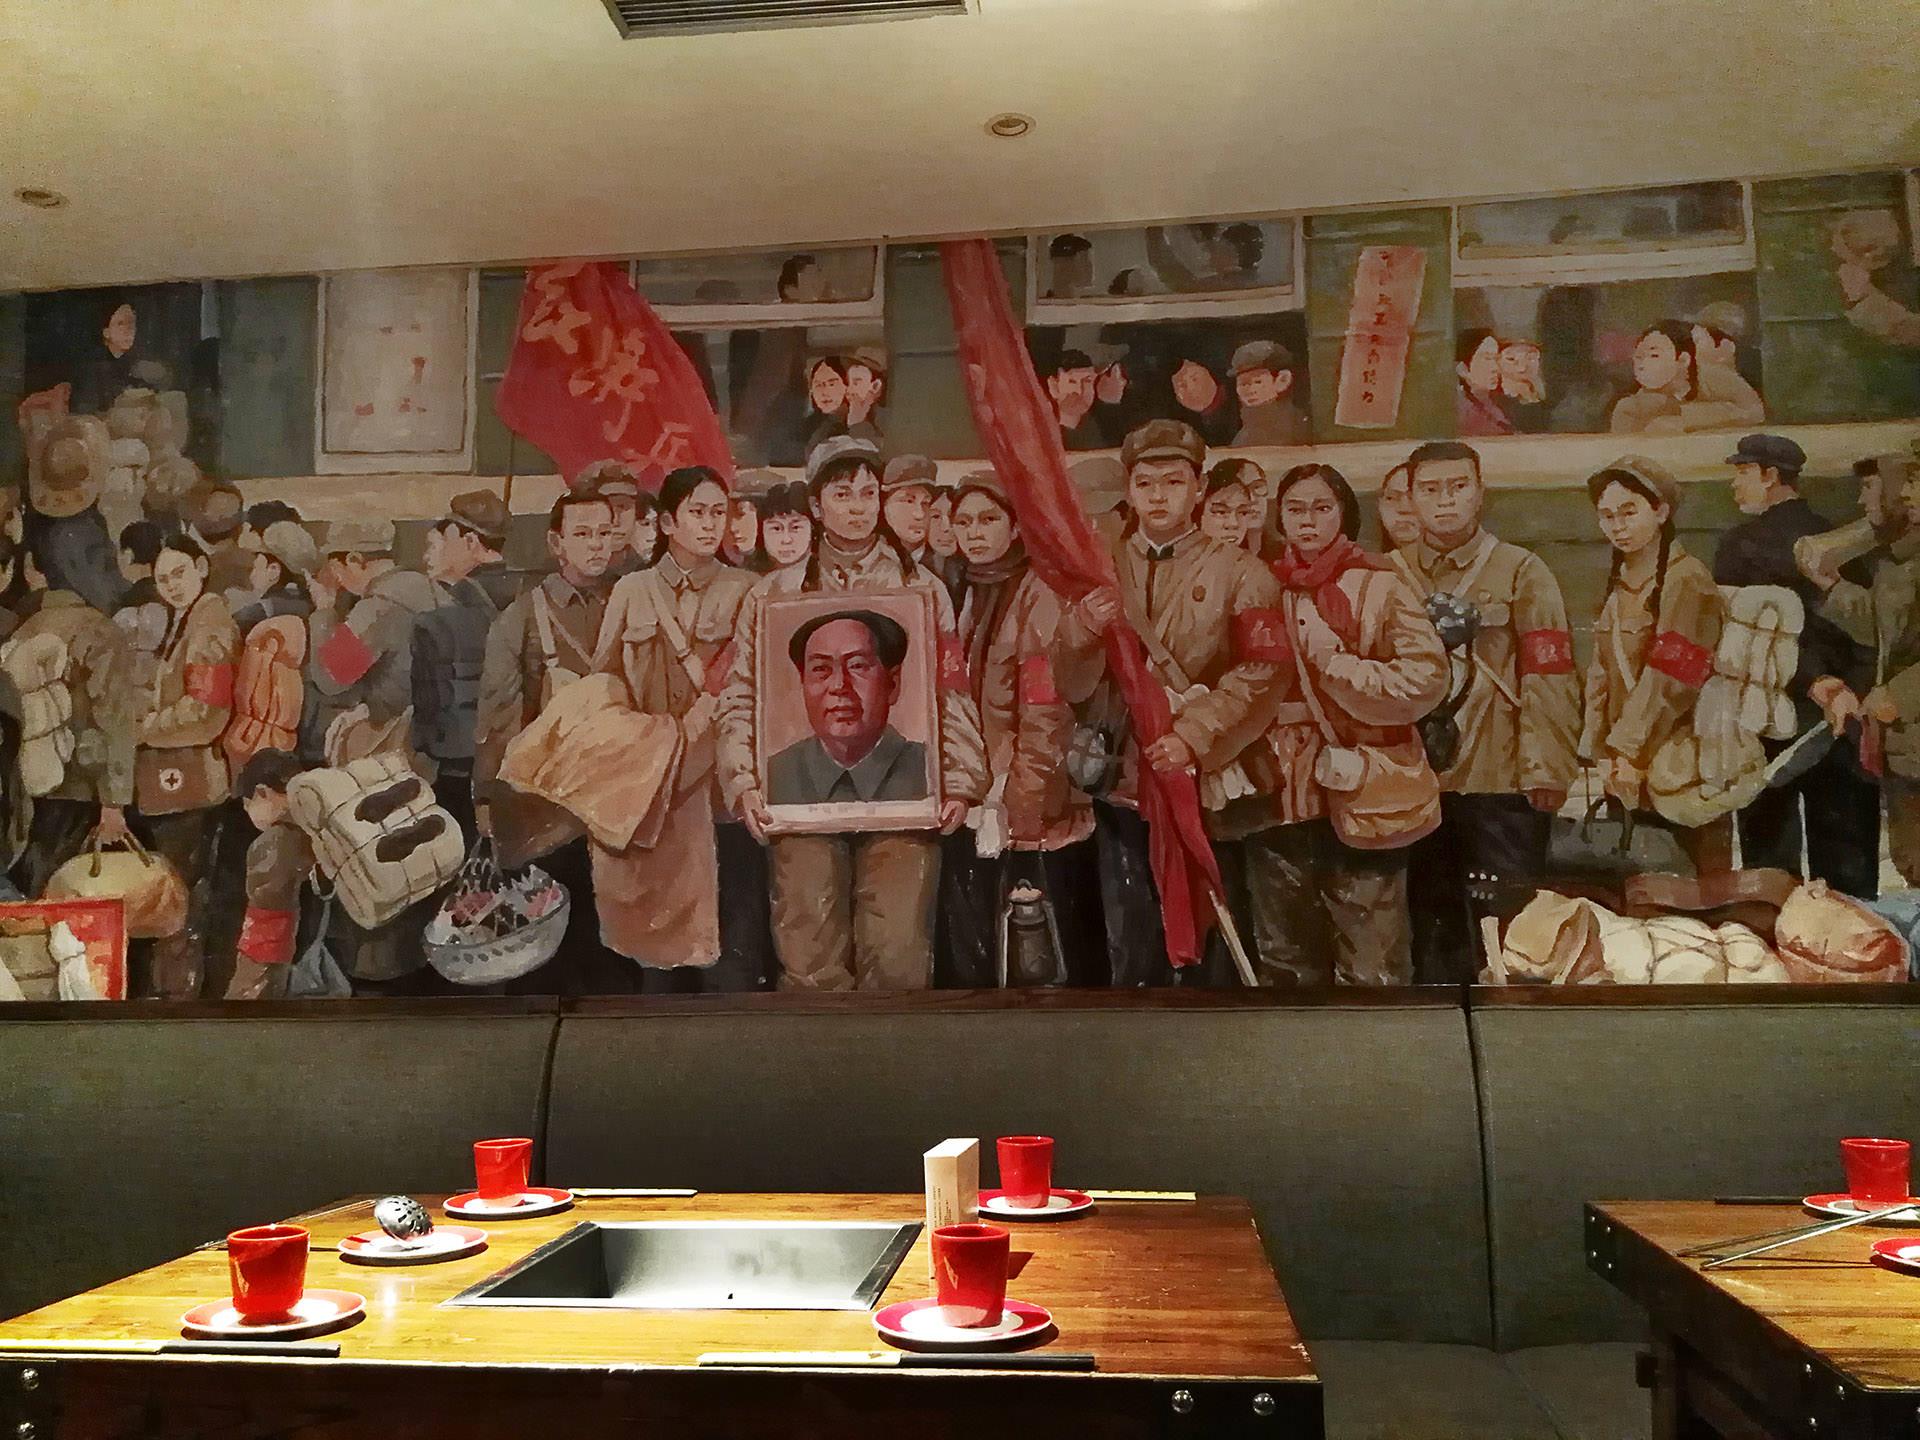 הוט-פוט דה-דווי-ג'אנג, מסעדה בסגנון "אדום" בשאנגחאי. מיסחור של המהפכה שיצאה נגד מיסחור (צילום: נוגה פייגה)